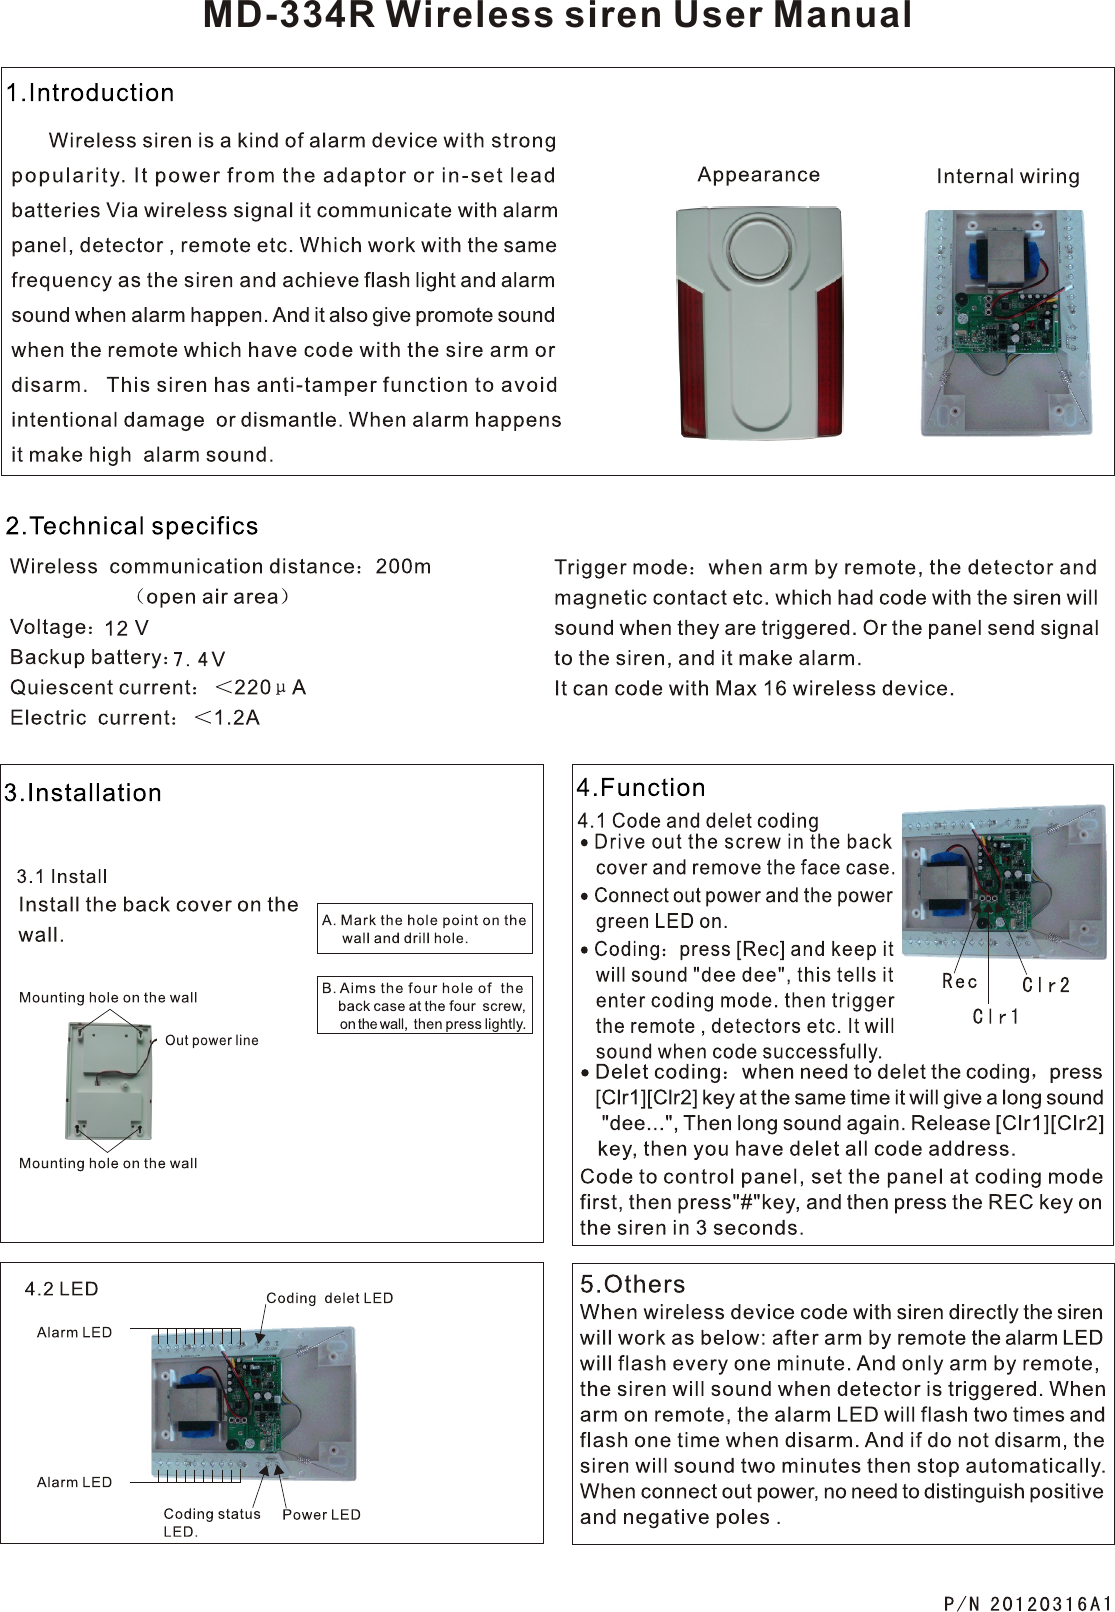 MD-334R Wireless siren User Manual